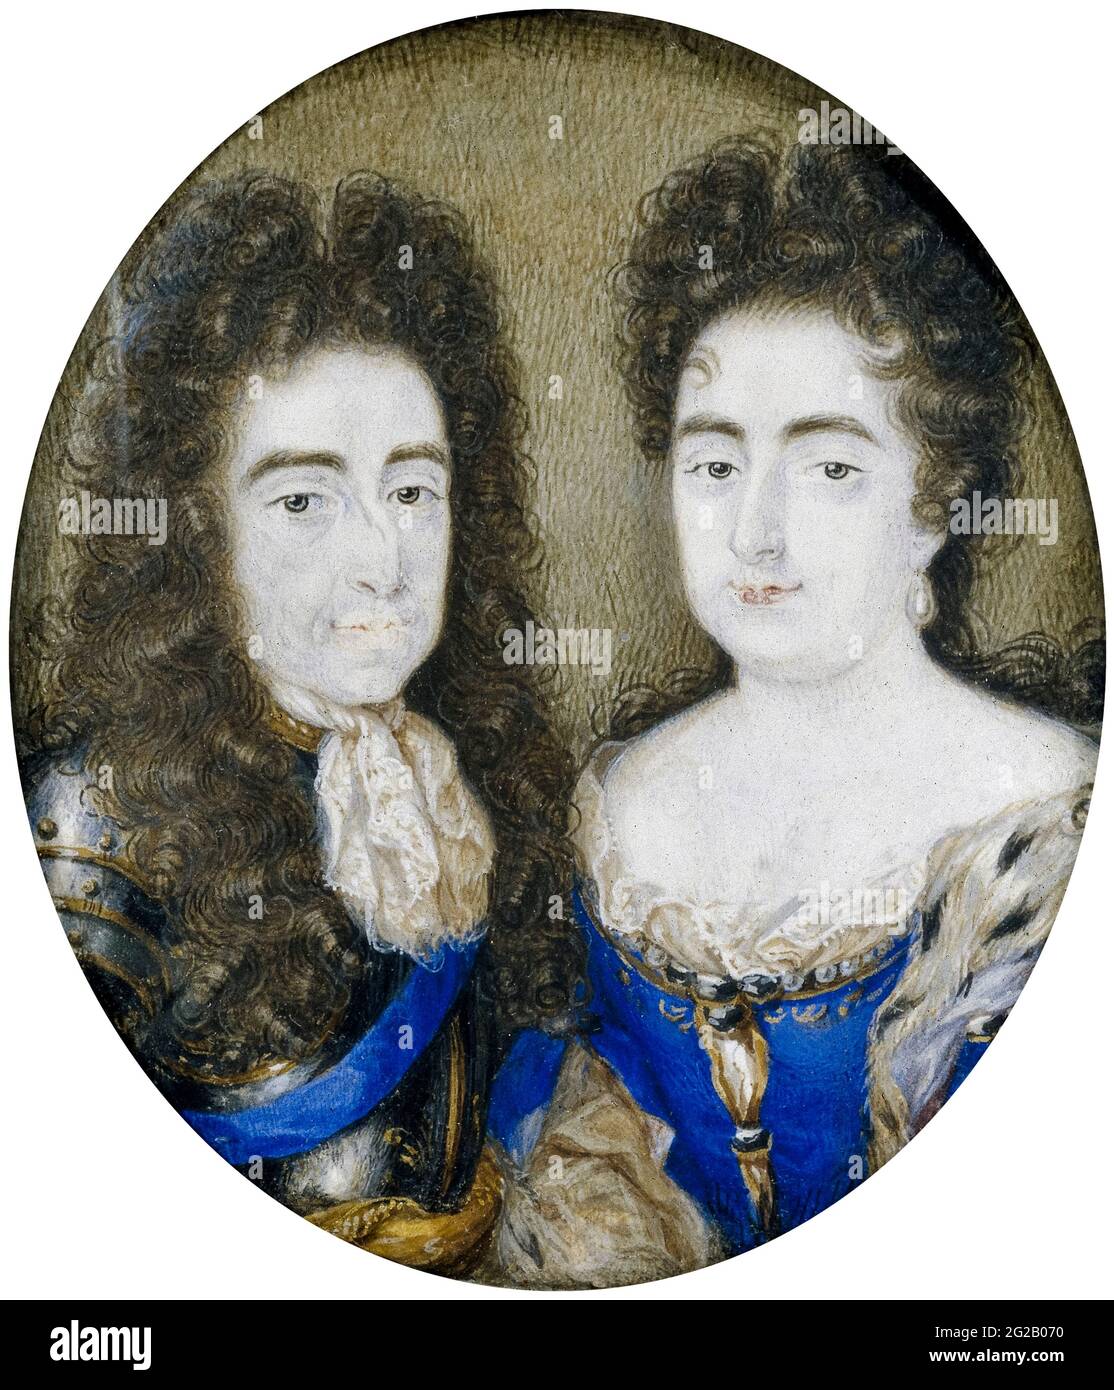 Guglielmo e Maria: Guglielmo III (1650-1702) Principe d'Orange e Re d'Inghilterra (1689-1702) con sua moglie Maria Stuart (1662-1694) Regina Maria II d'Inghilterra (1689-1694), ritratto in miniatura di Peter Hoholly, 1700-1750 Foto Stock